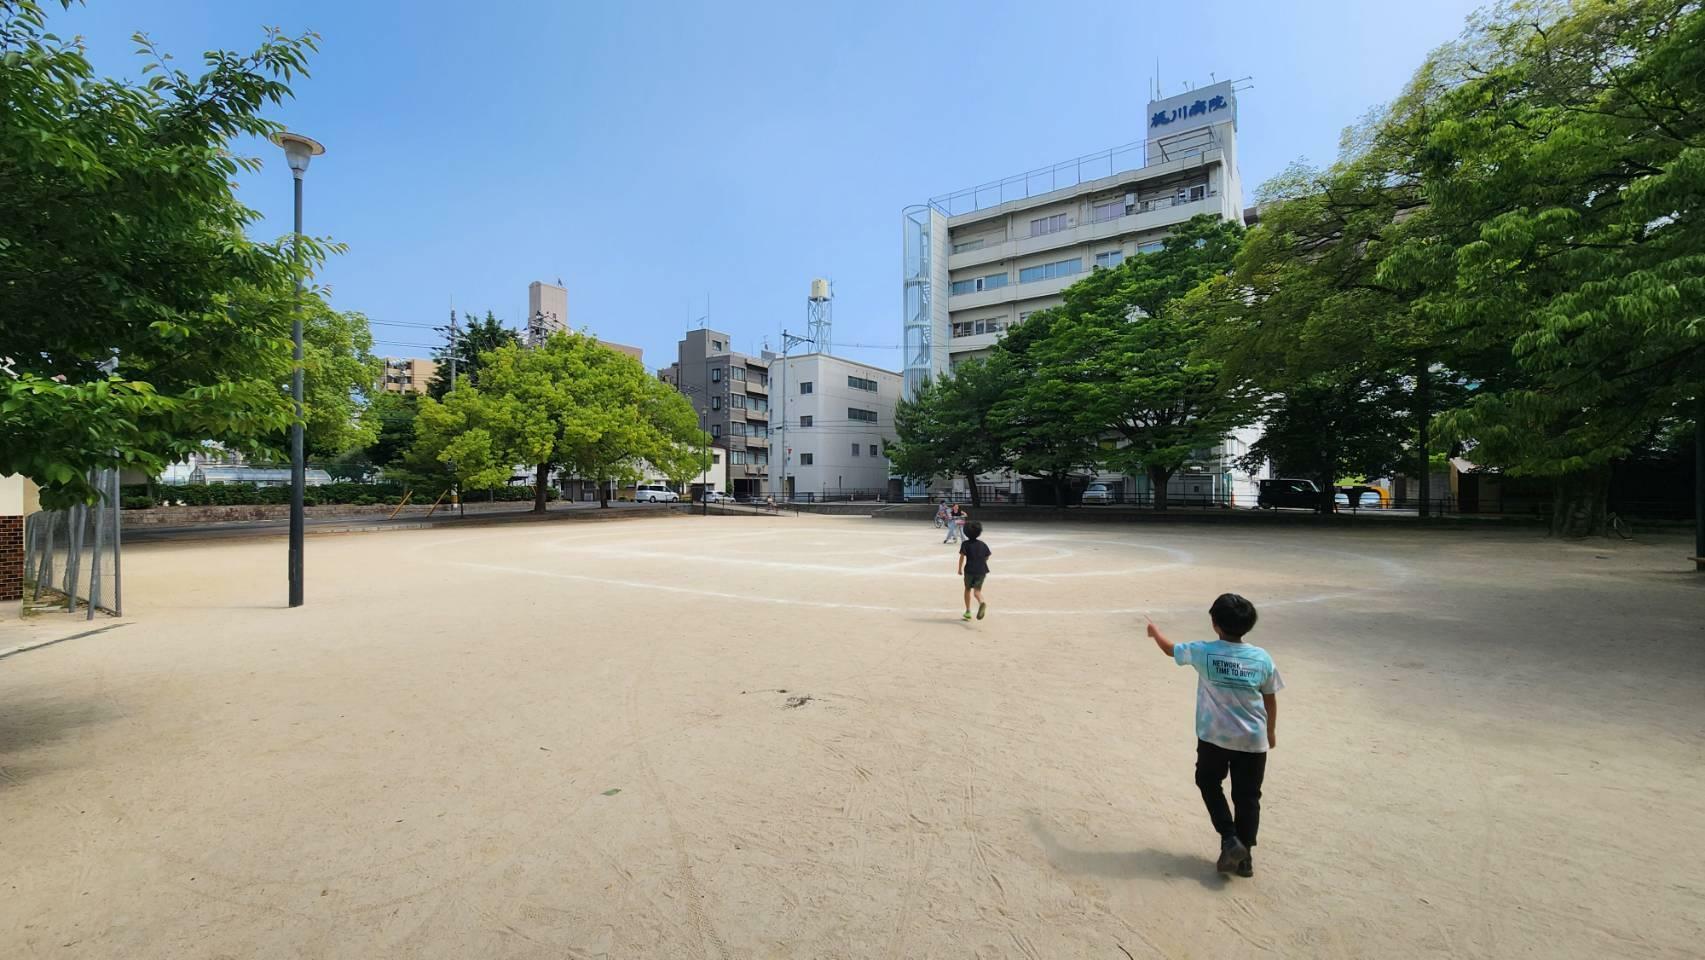 広々とした広場で子どもたちが元気いっぱいに遊んでいる姿が印象的でした。